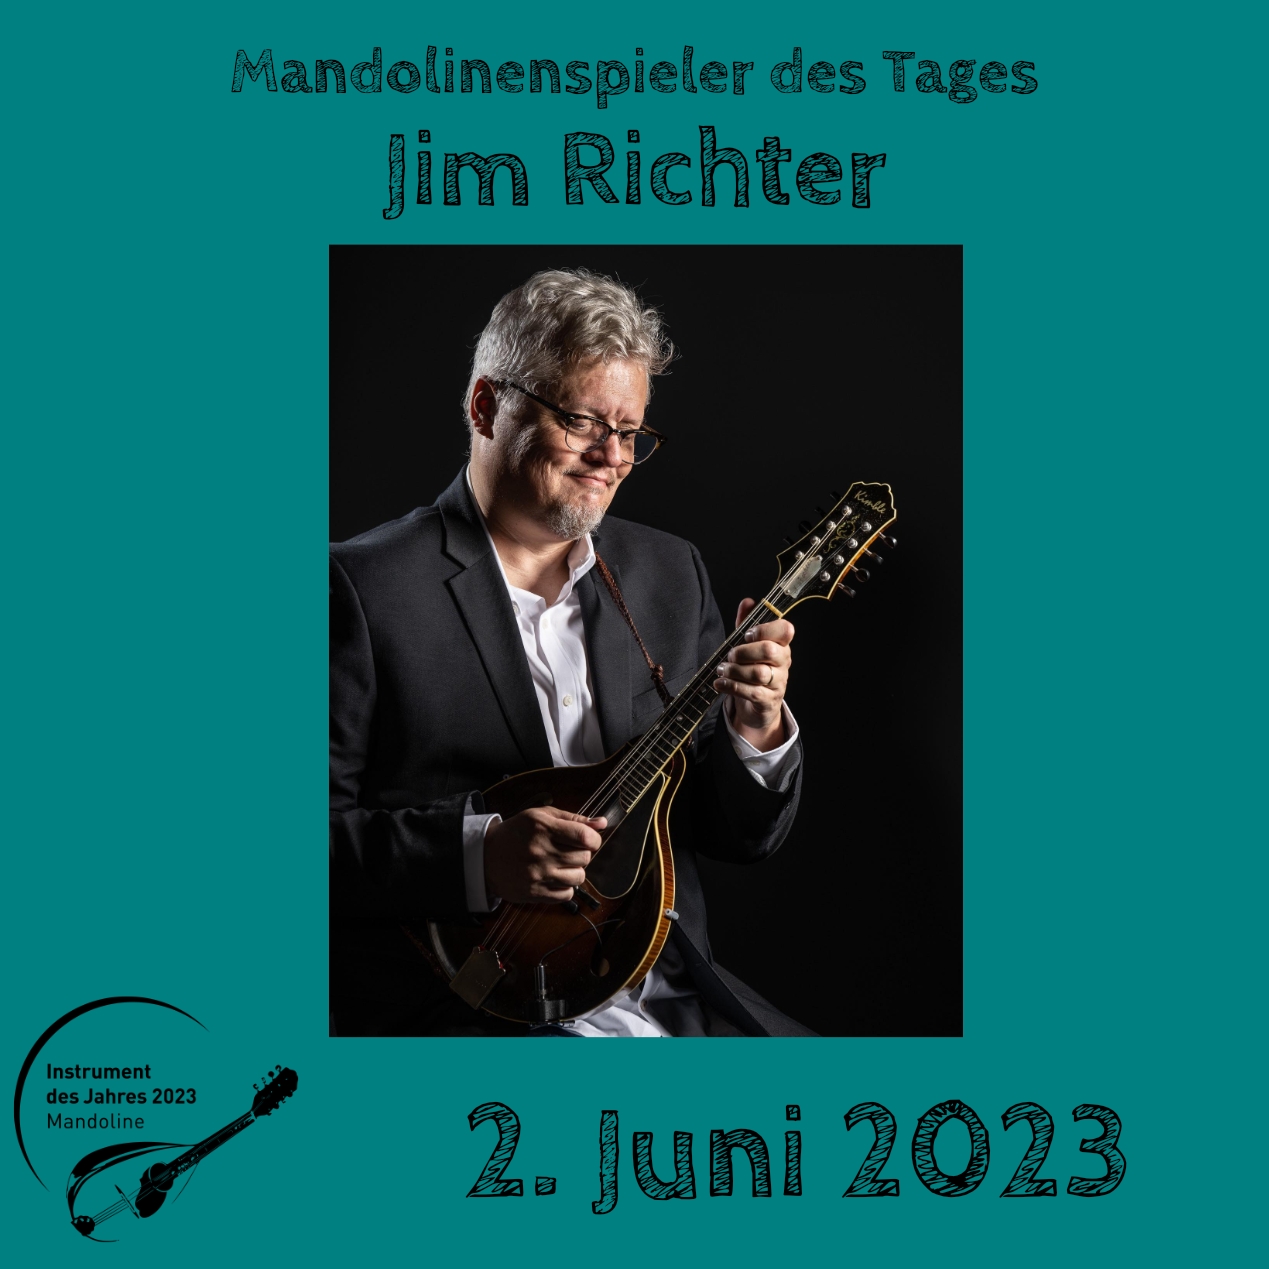 Jim Richter Mandoline Instrument des Jahres 2023 Mandolinenspieler Mandolinenspielerin des Tages